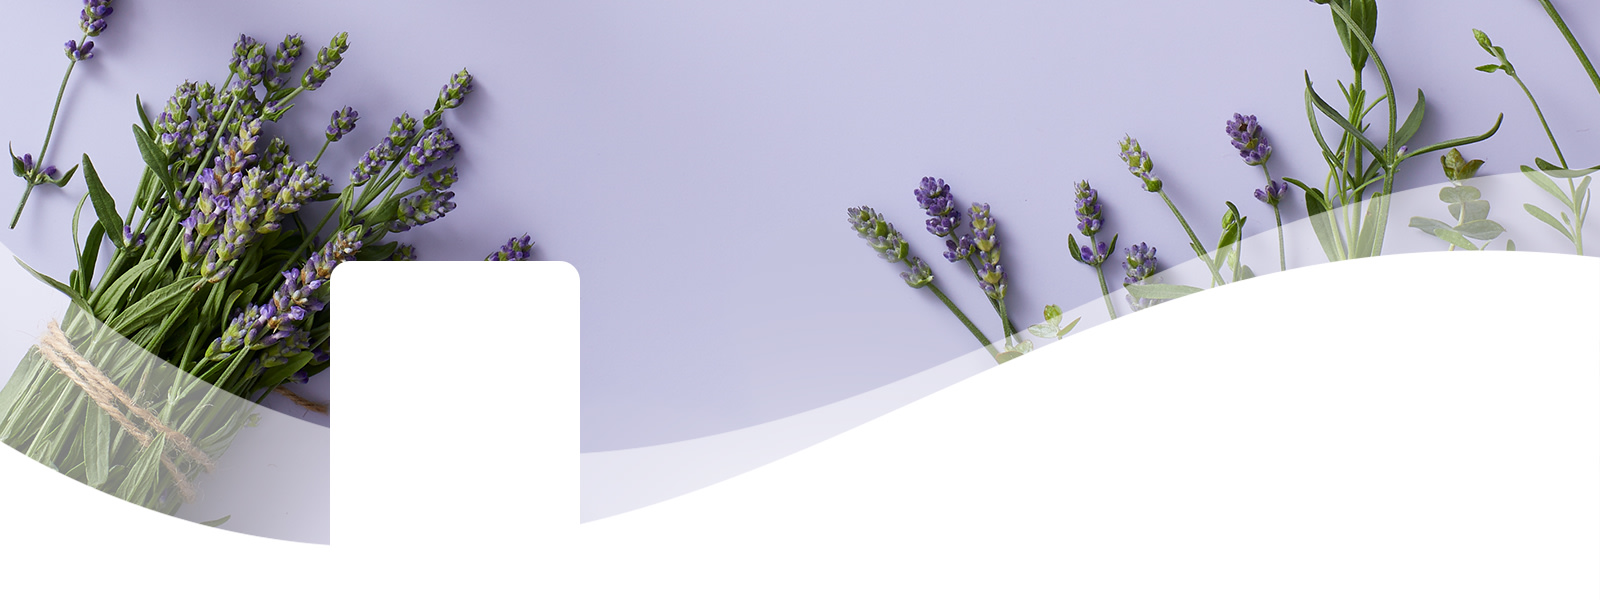 DT PDP Header Essentials Lavender REVISED